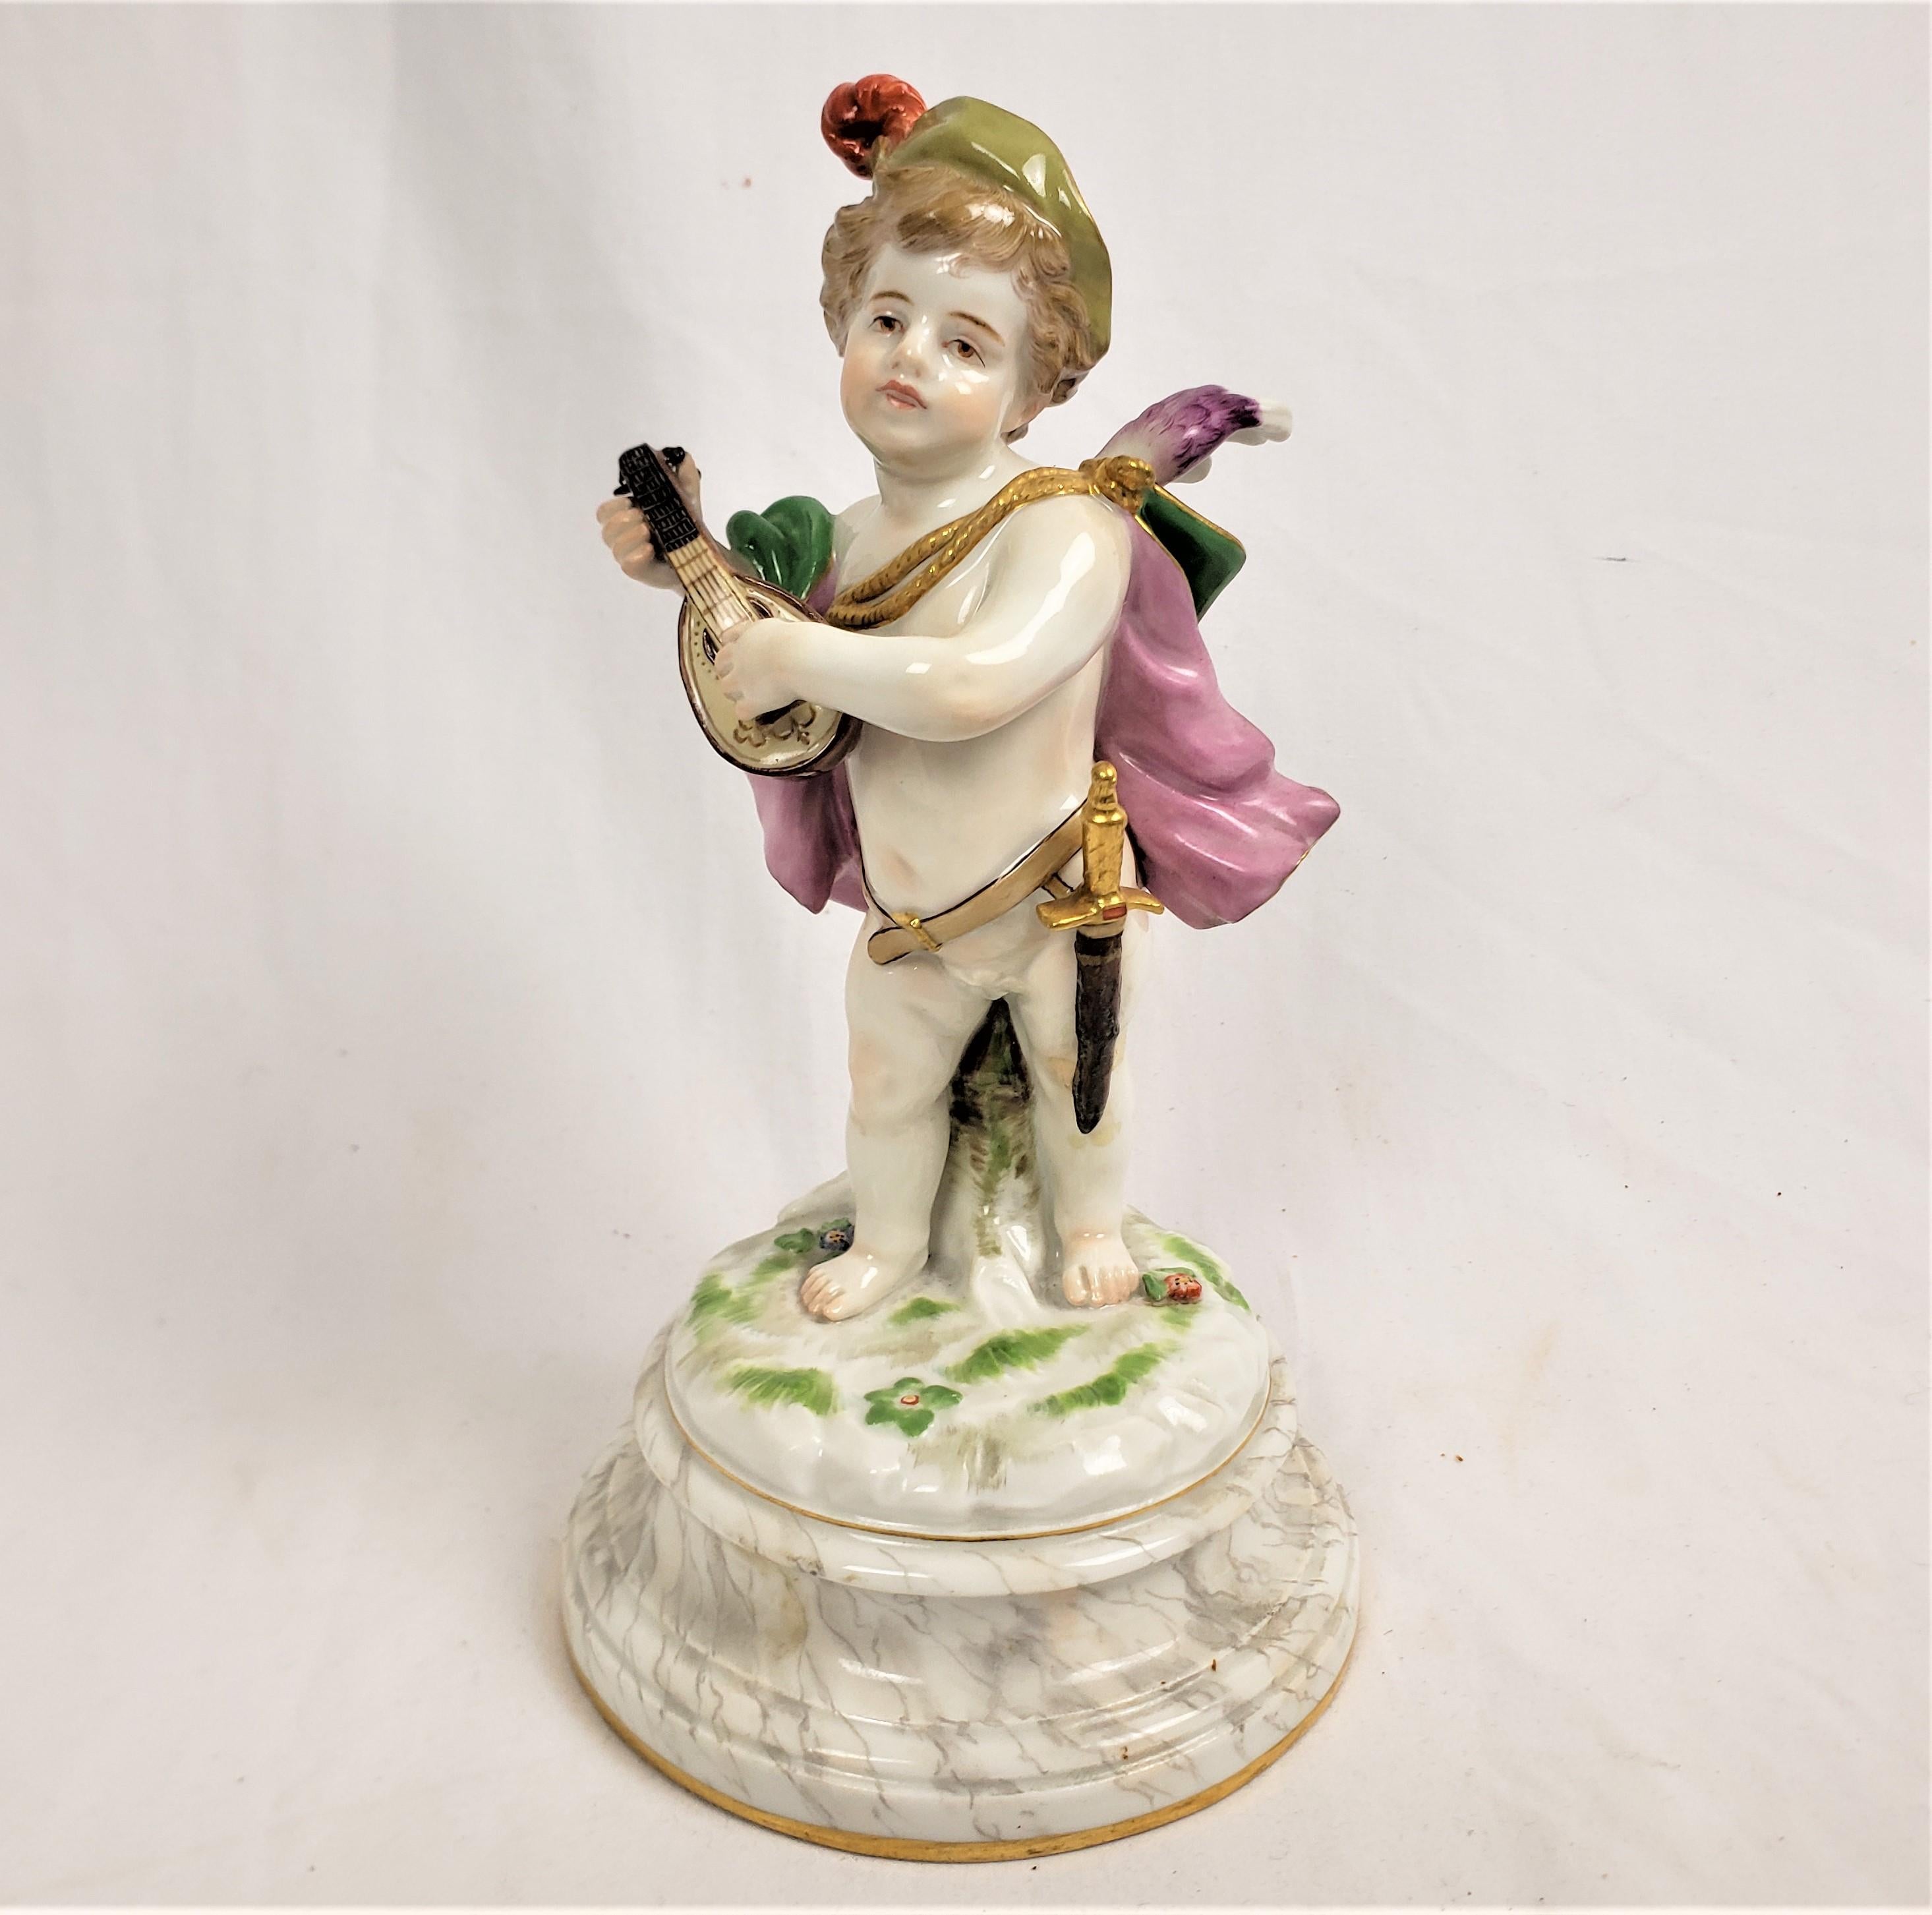 Diese antike Figur wurde von der renommierten Meissener Manufaktur in Deutschland um 1850 in ihrem romantischen Dresdner Stil hergestellt. Die Figur besteht aus ihrem Pastenporzellan und zeigt ein kleines Kind, das einen Umhang, eine Mütze und ein